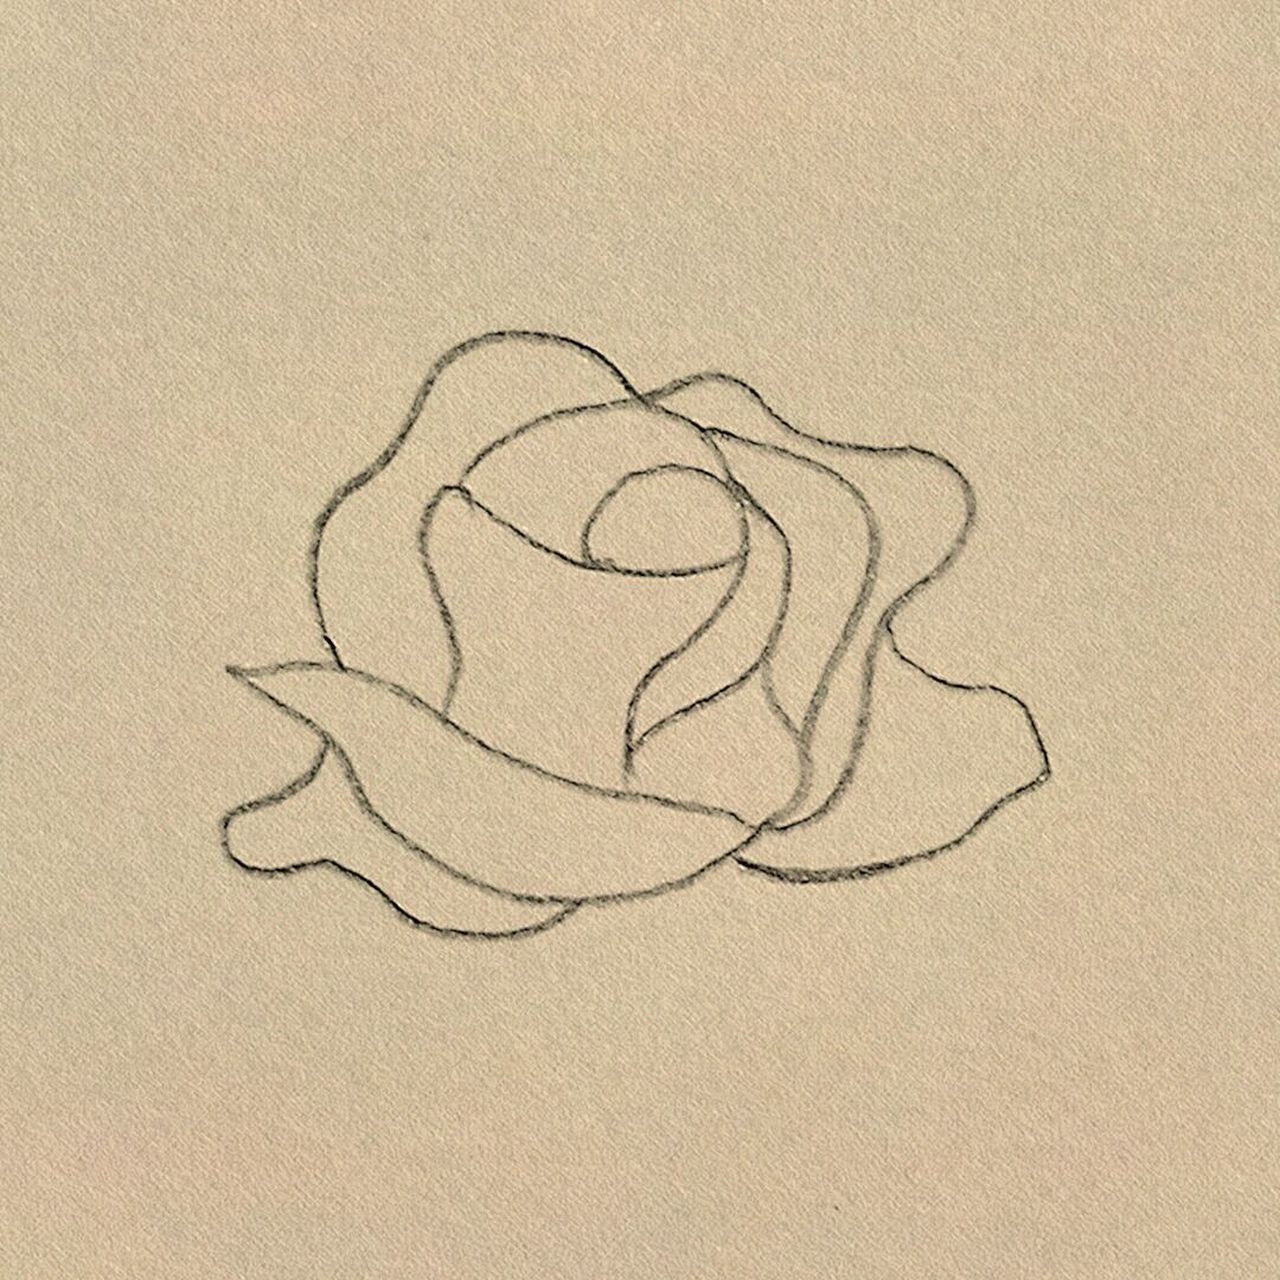 一朵玫瑰花 简笔画图片